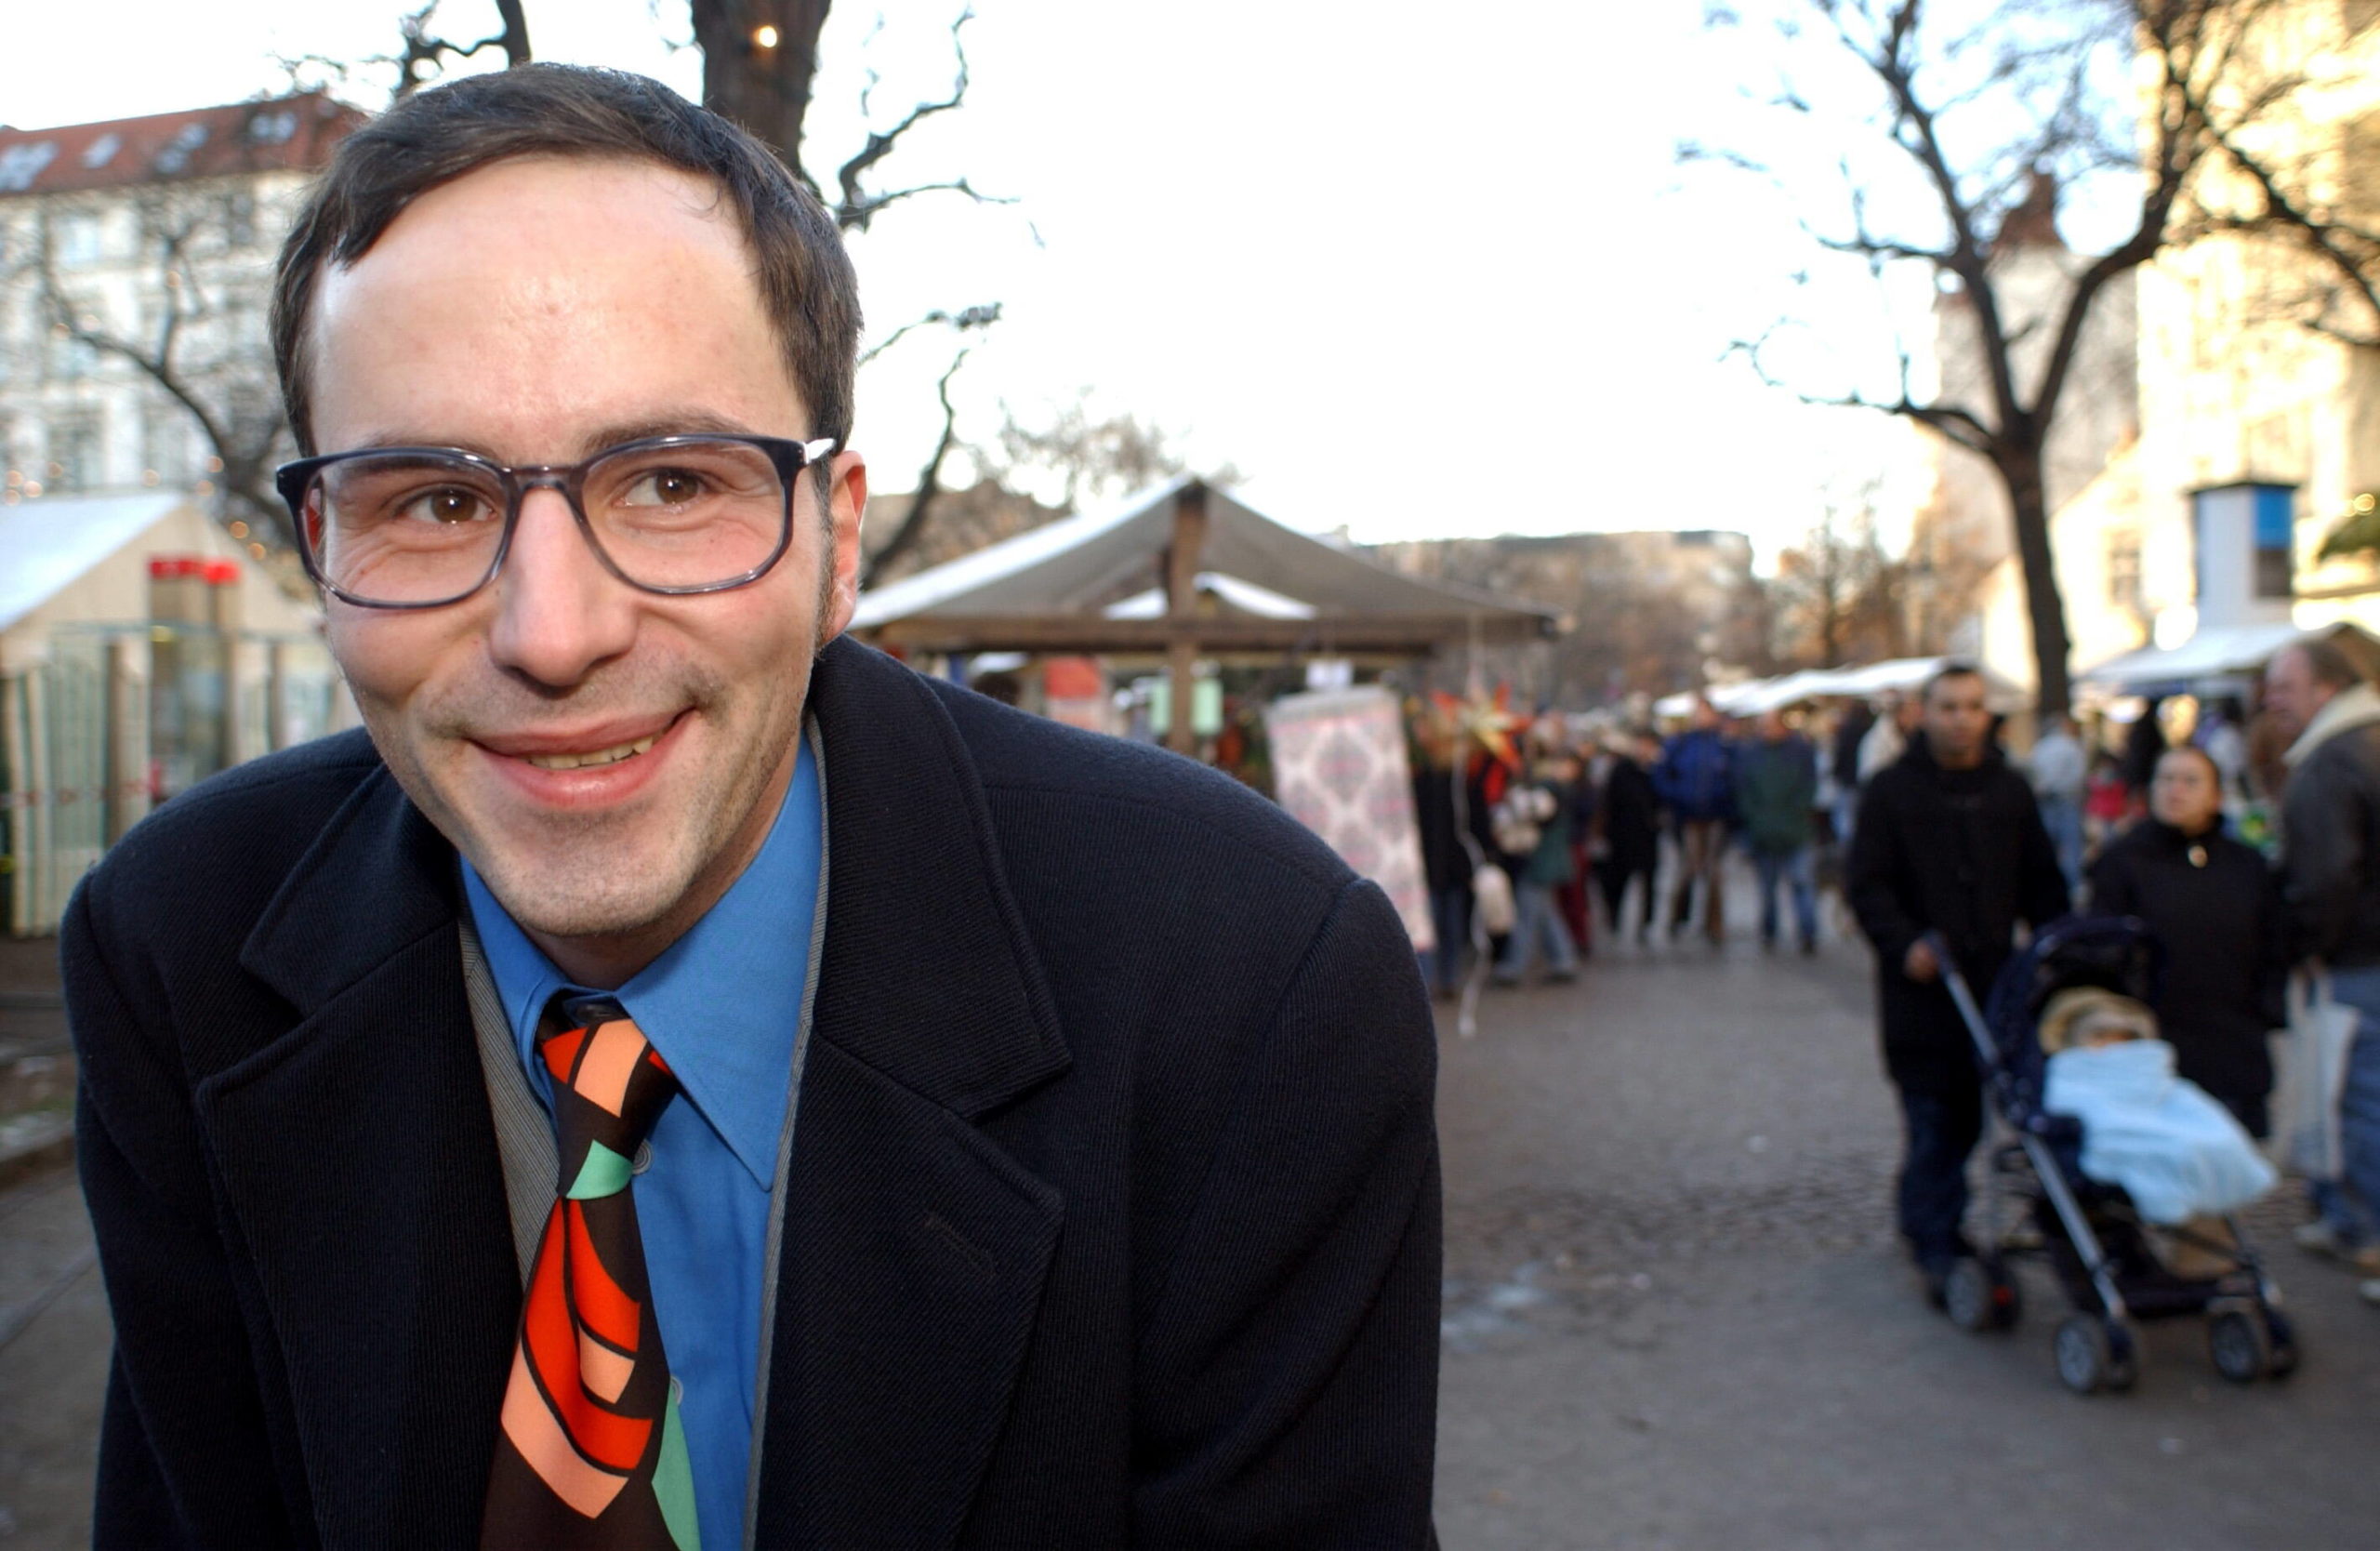 Brillenträger Berlin: Der Comedian Kurt Krömer auf dem Neuköllner Weihnachtsmarkt auf dem Richardplatz. Foto: Imago/Brigani-Art